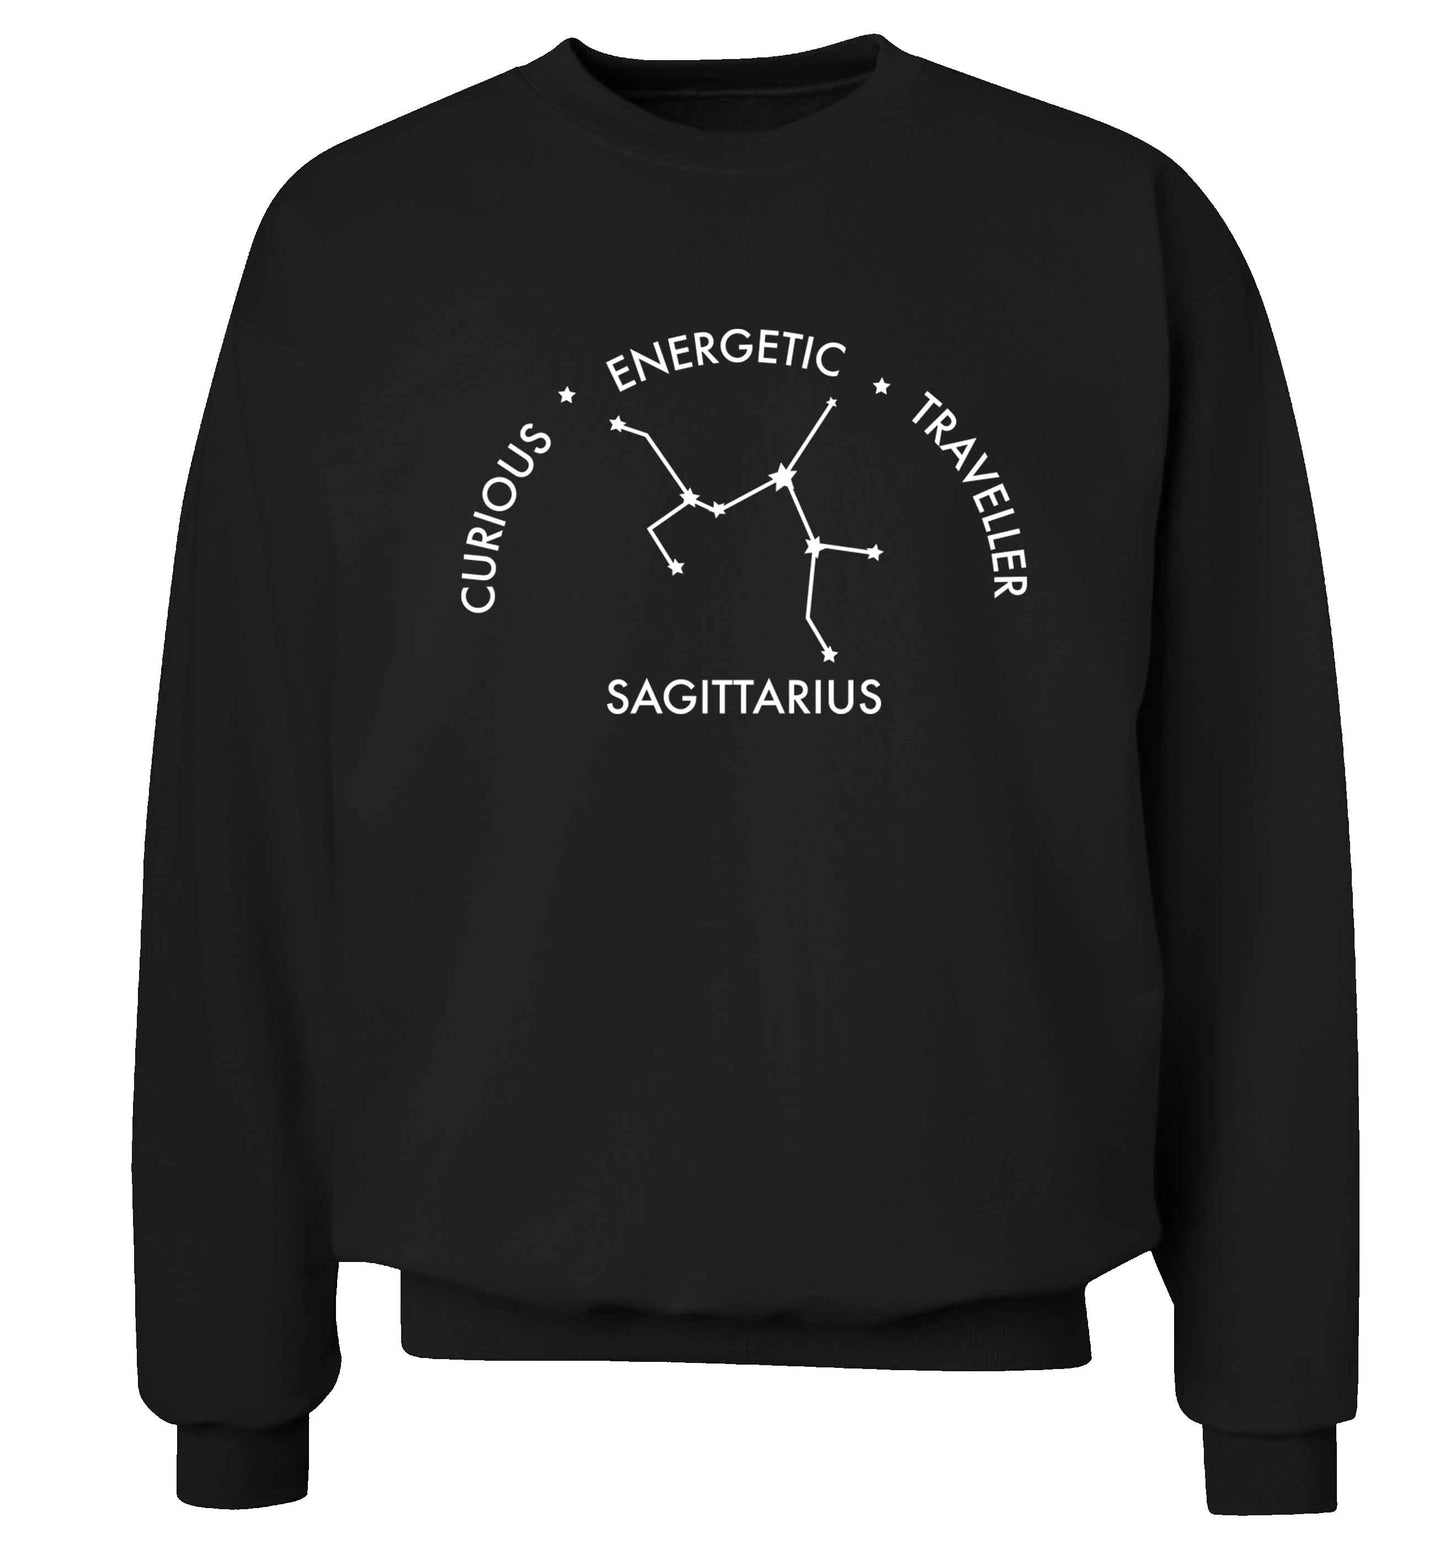 Sagittarius, curious, energetic, traveller Adult's unisex black Sweater 2XL